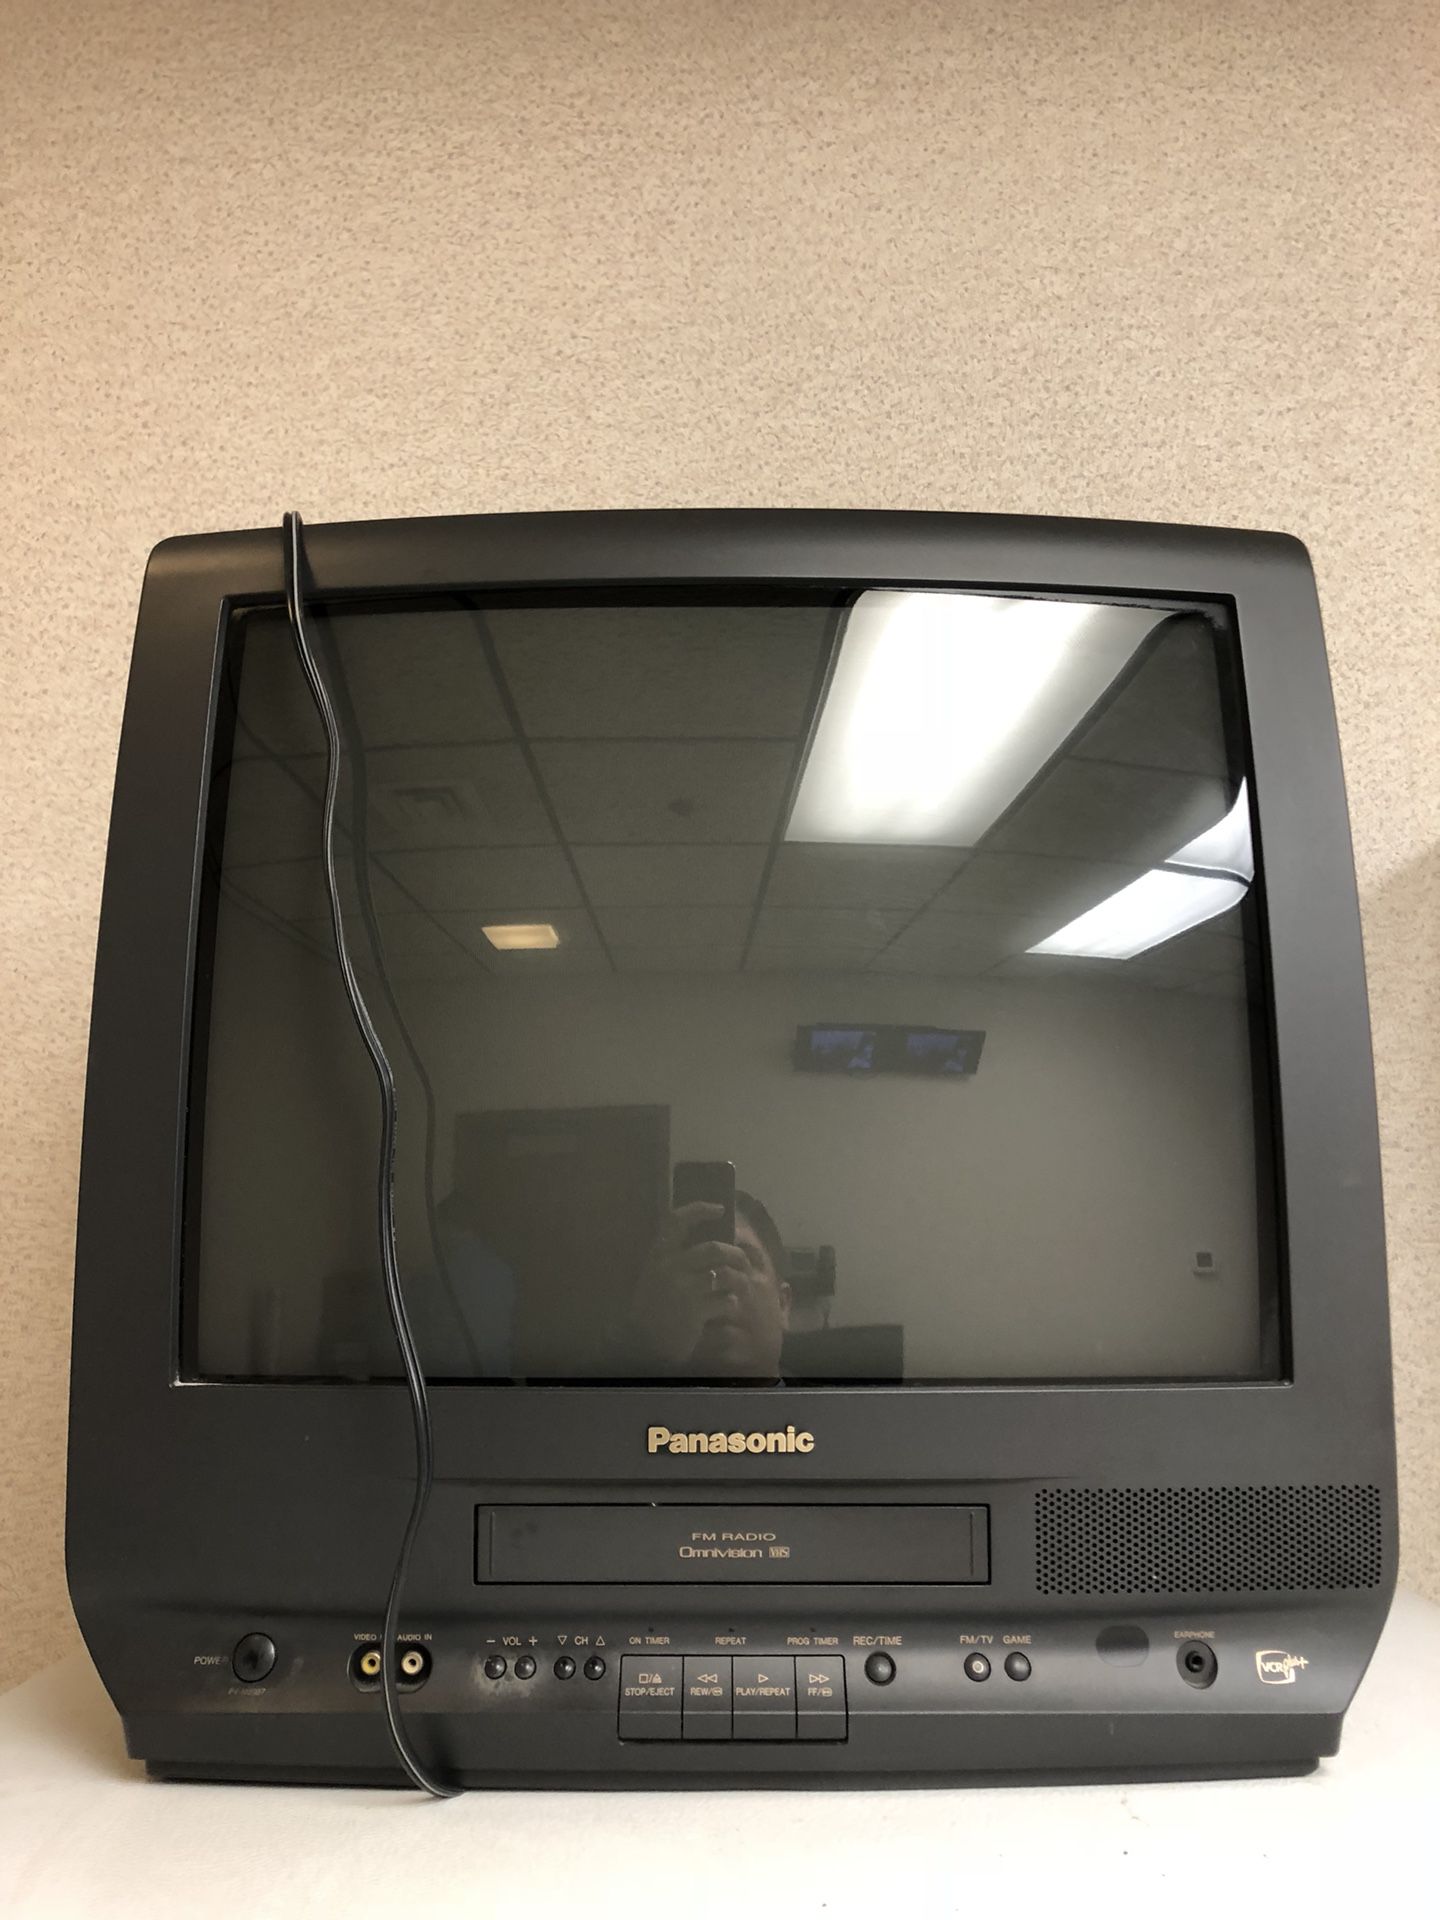 Panasonic pv-m2037 TV VCR combo